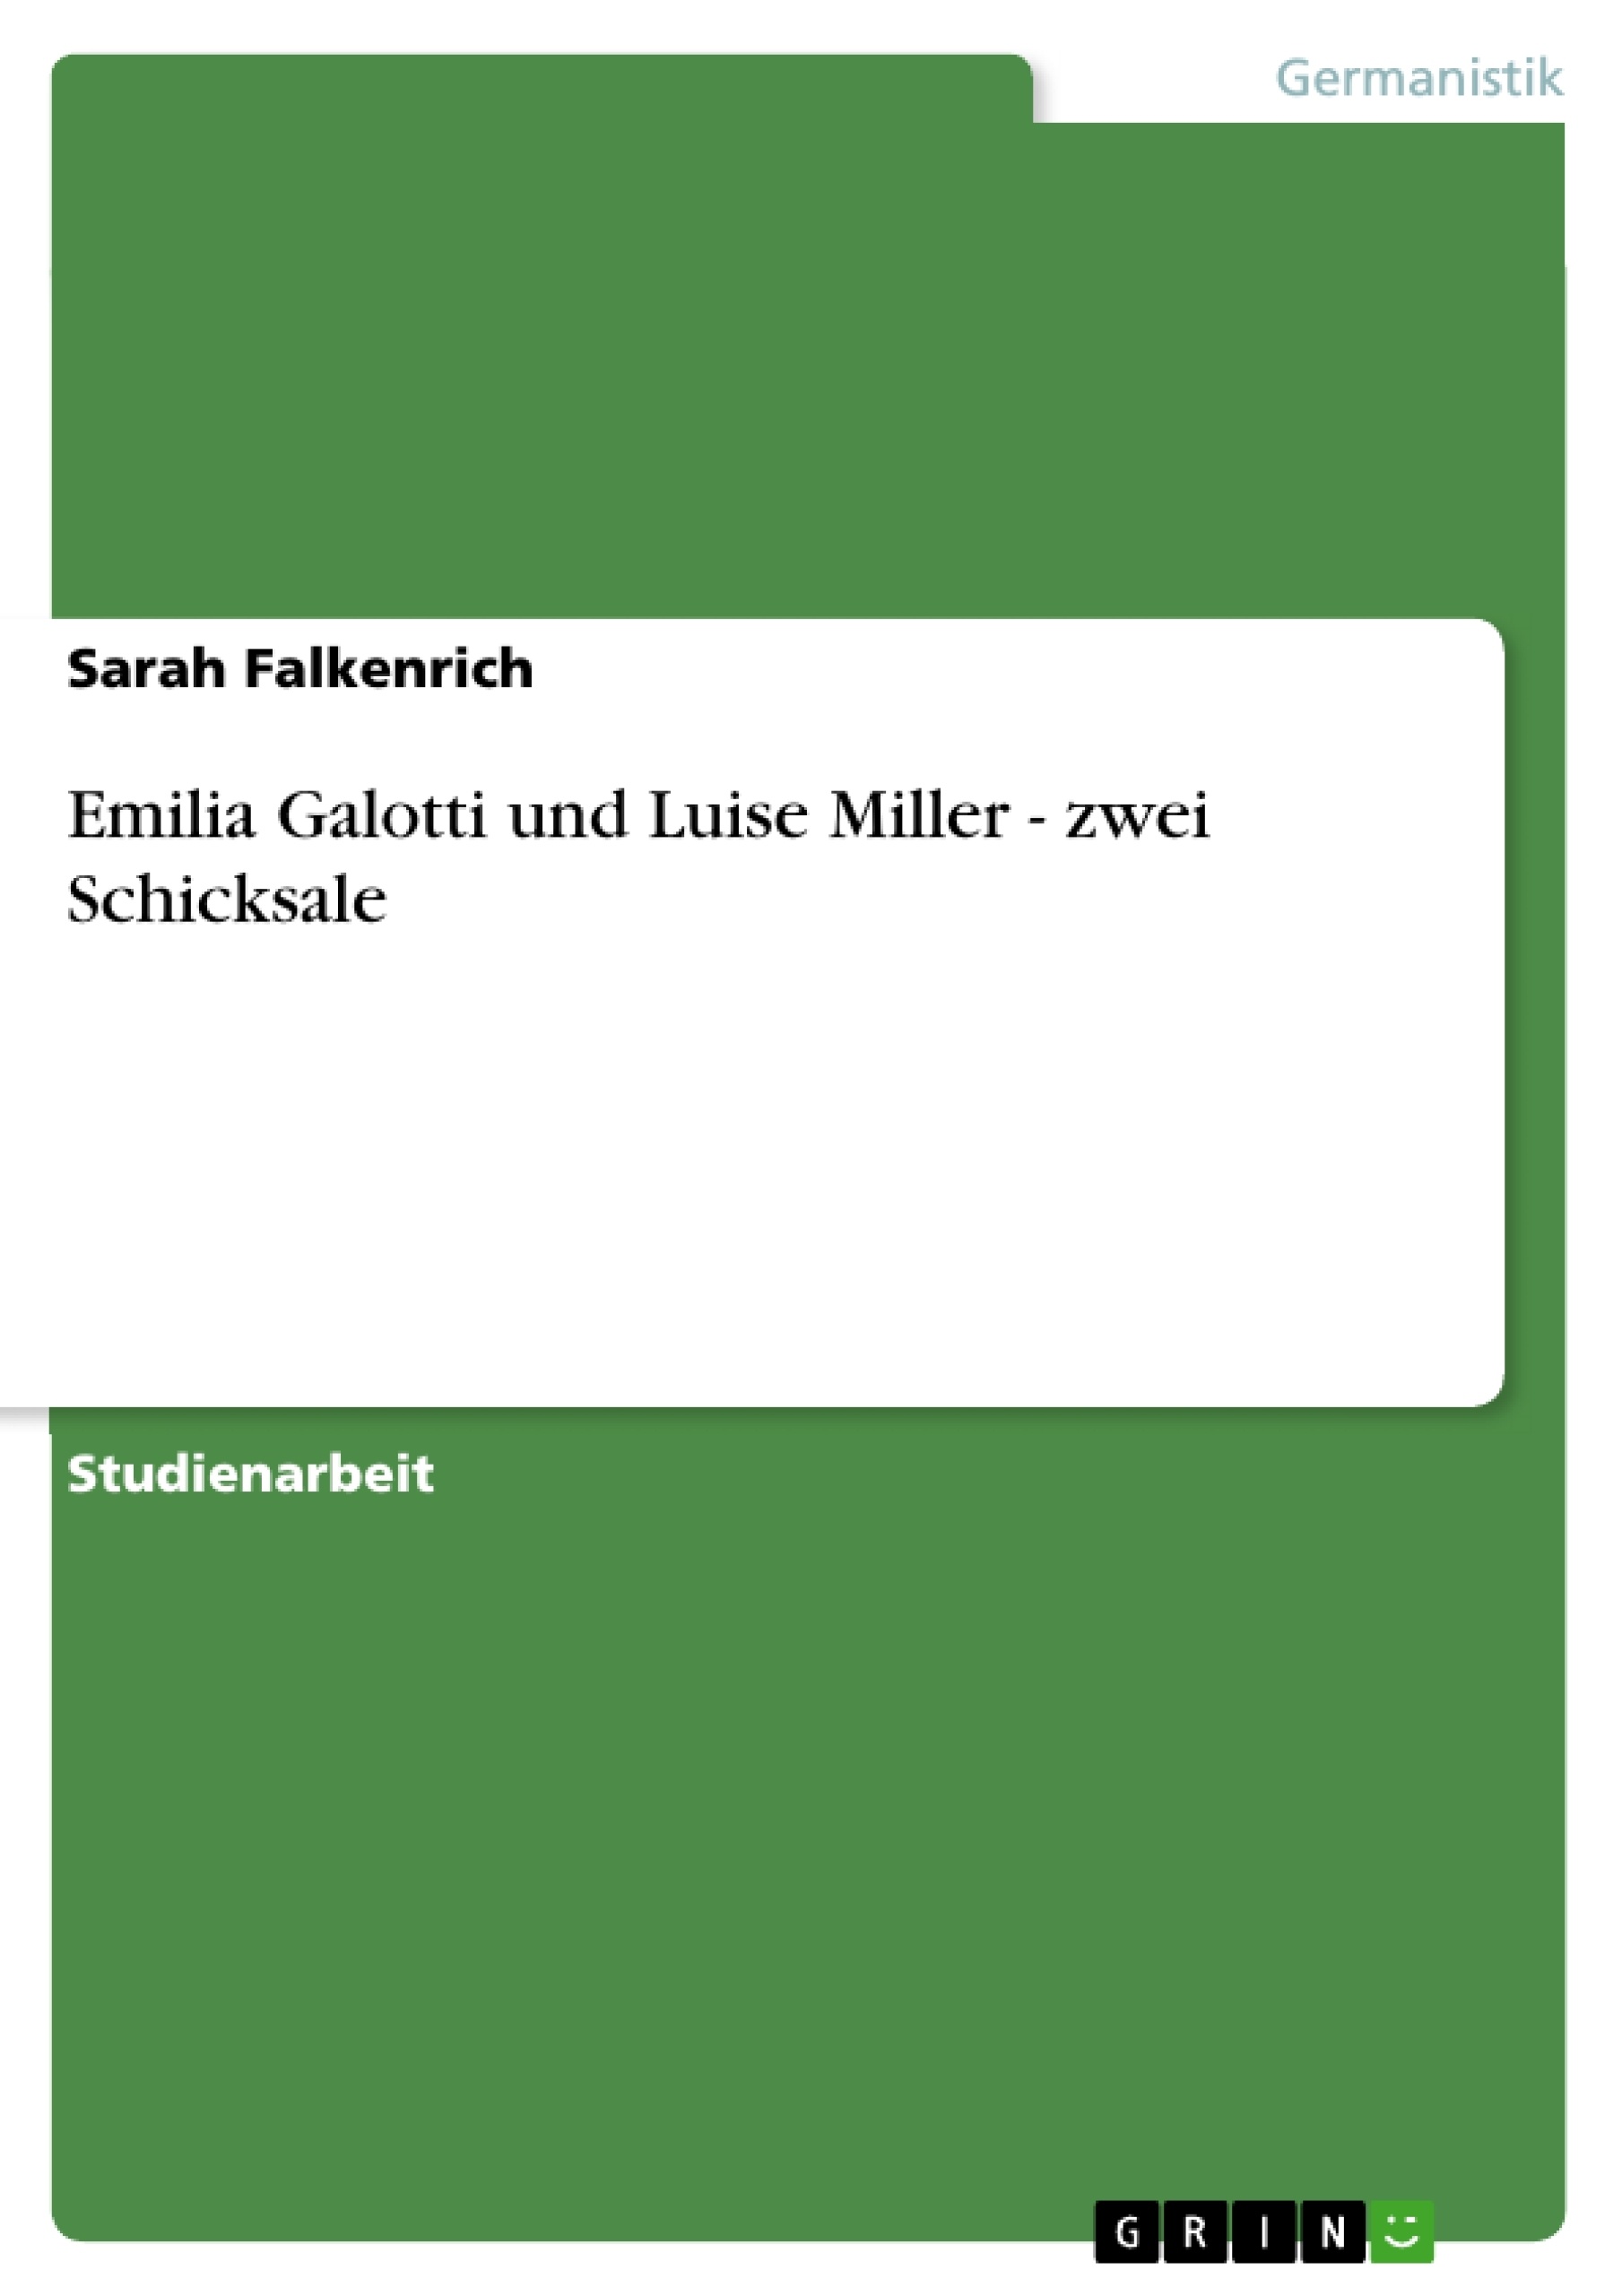 Título: Emilia Galotti und Luise Miller - zwei Schicksale